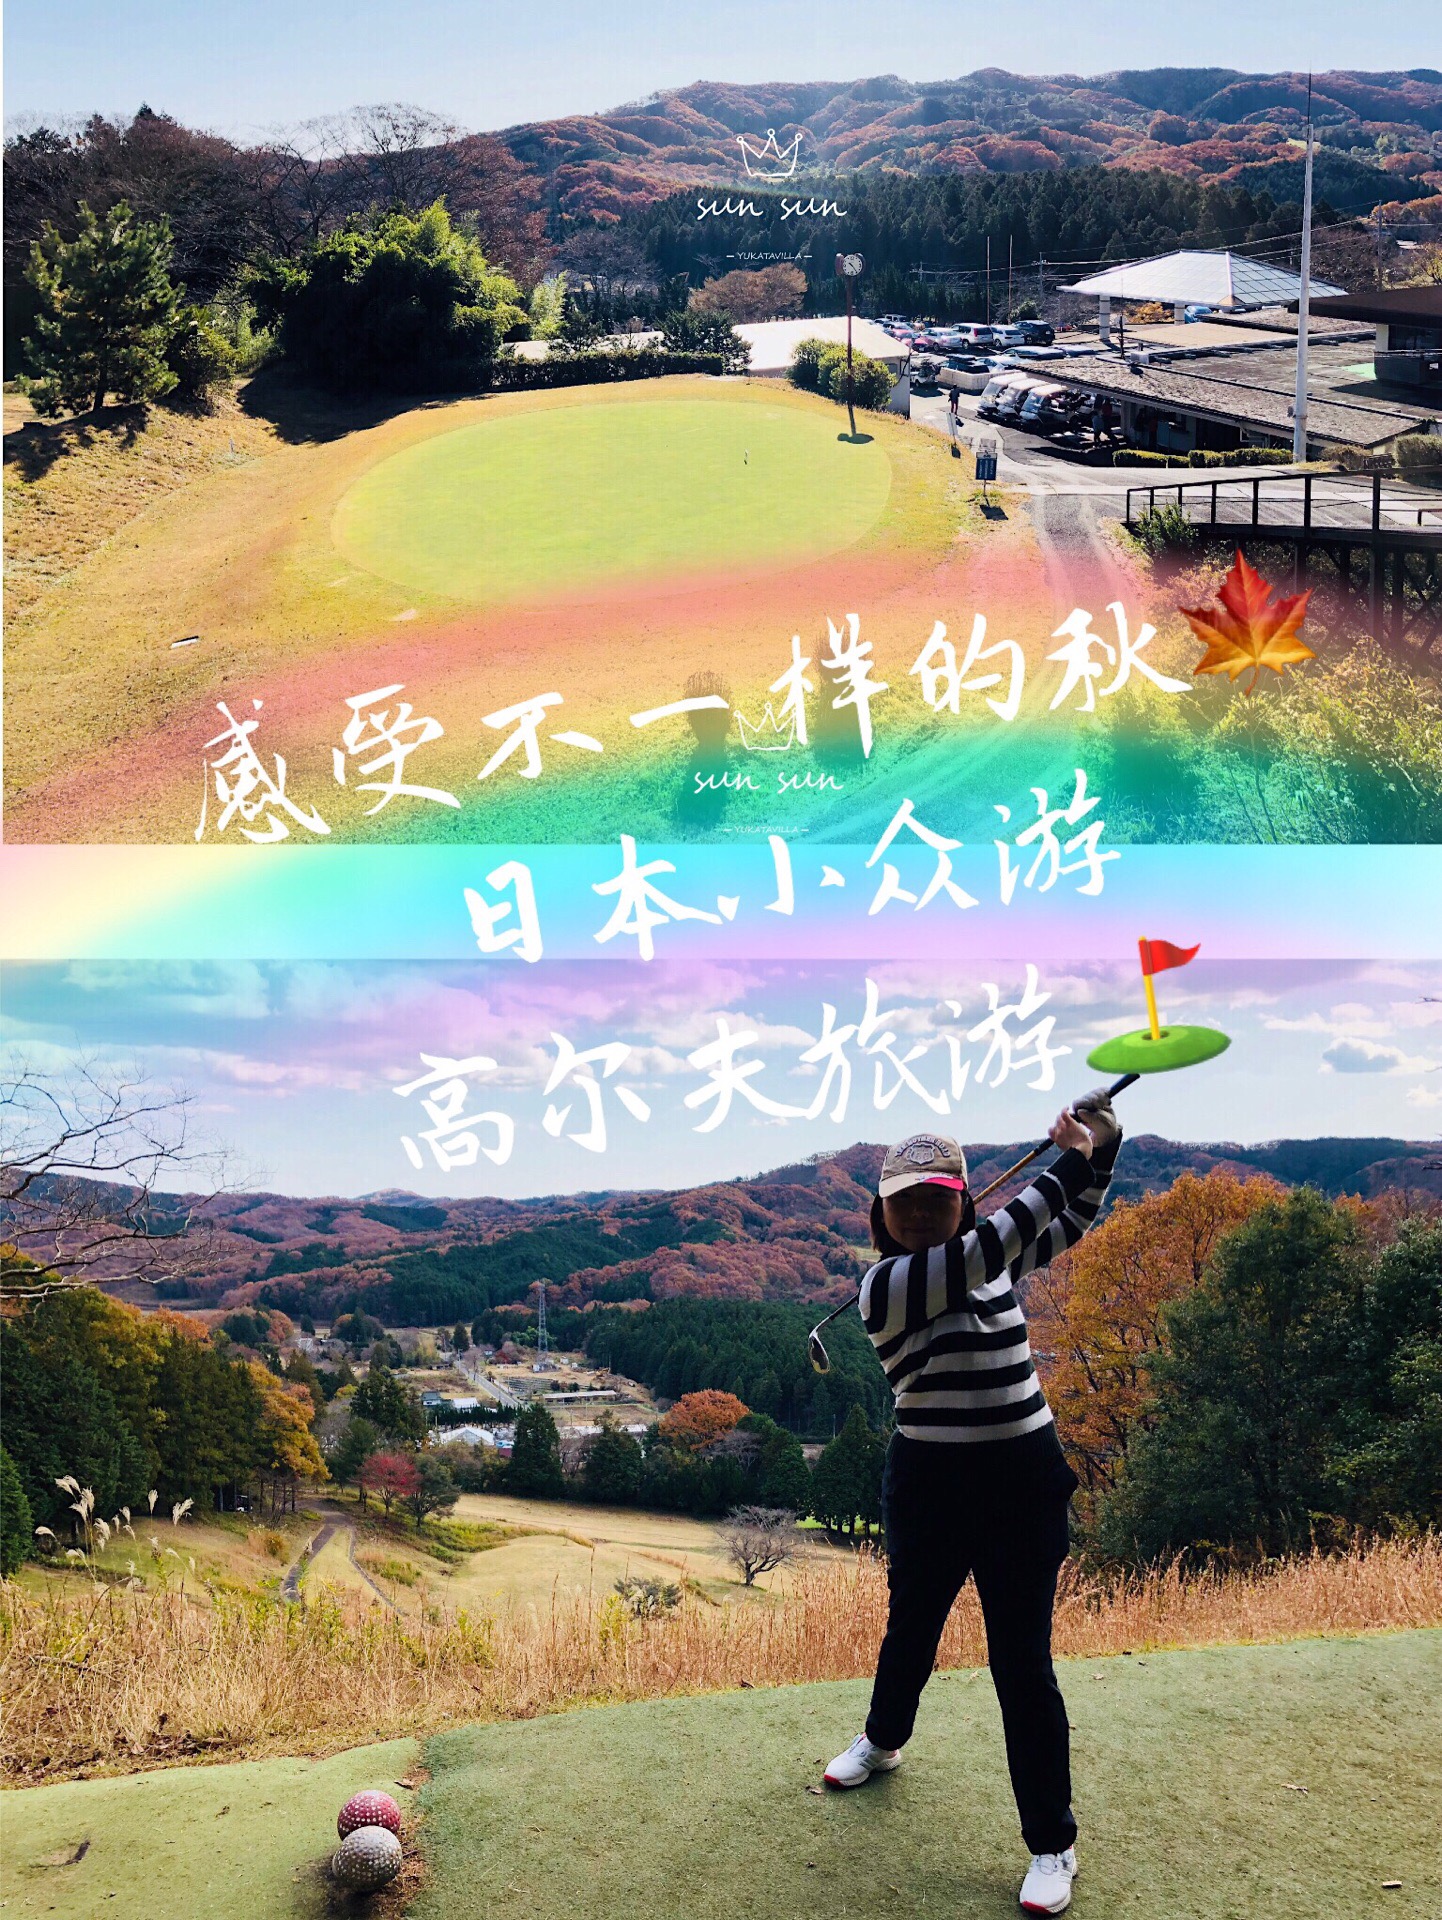 感受不一样的秋季🍁东京周边一日游高尔夫学习体验⛳️ 东京周末好去处 一日游之高尔夫⛳️体验，体验当地